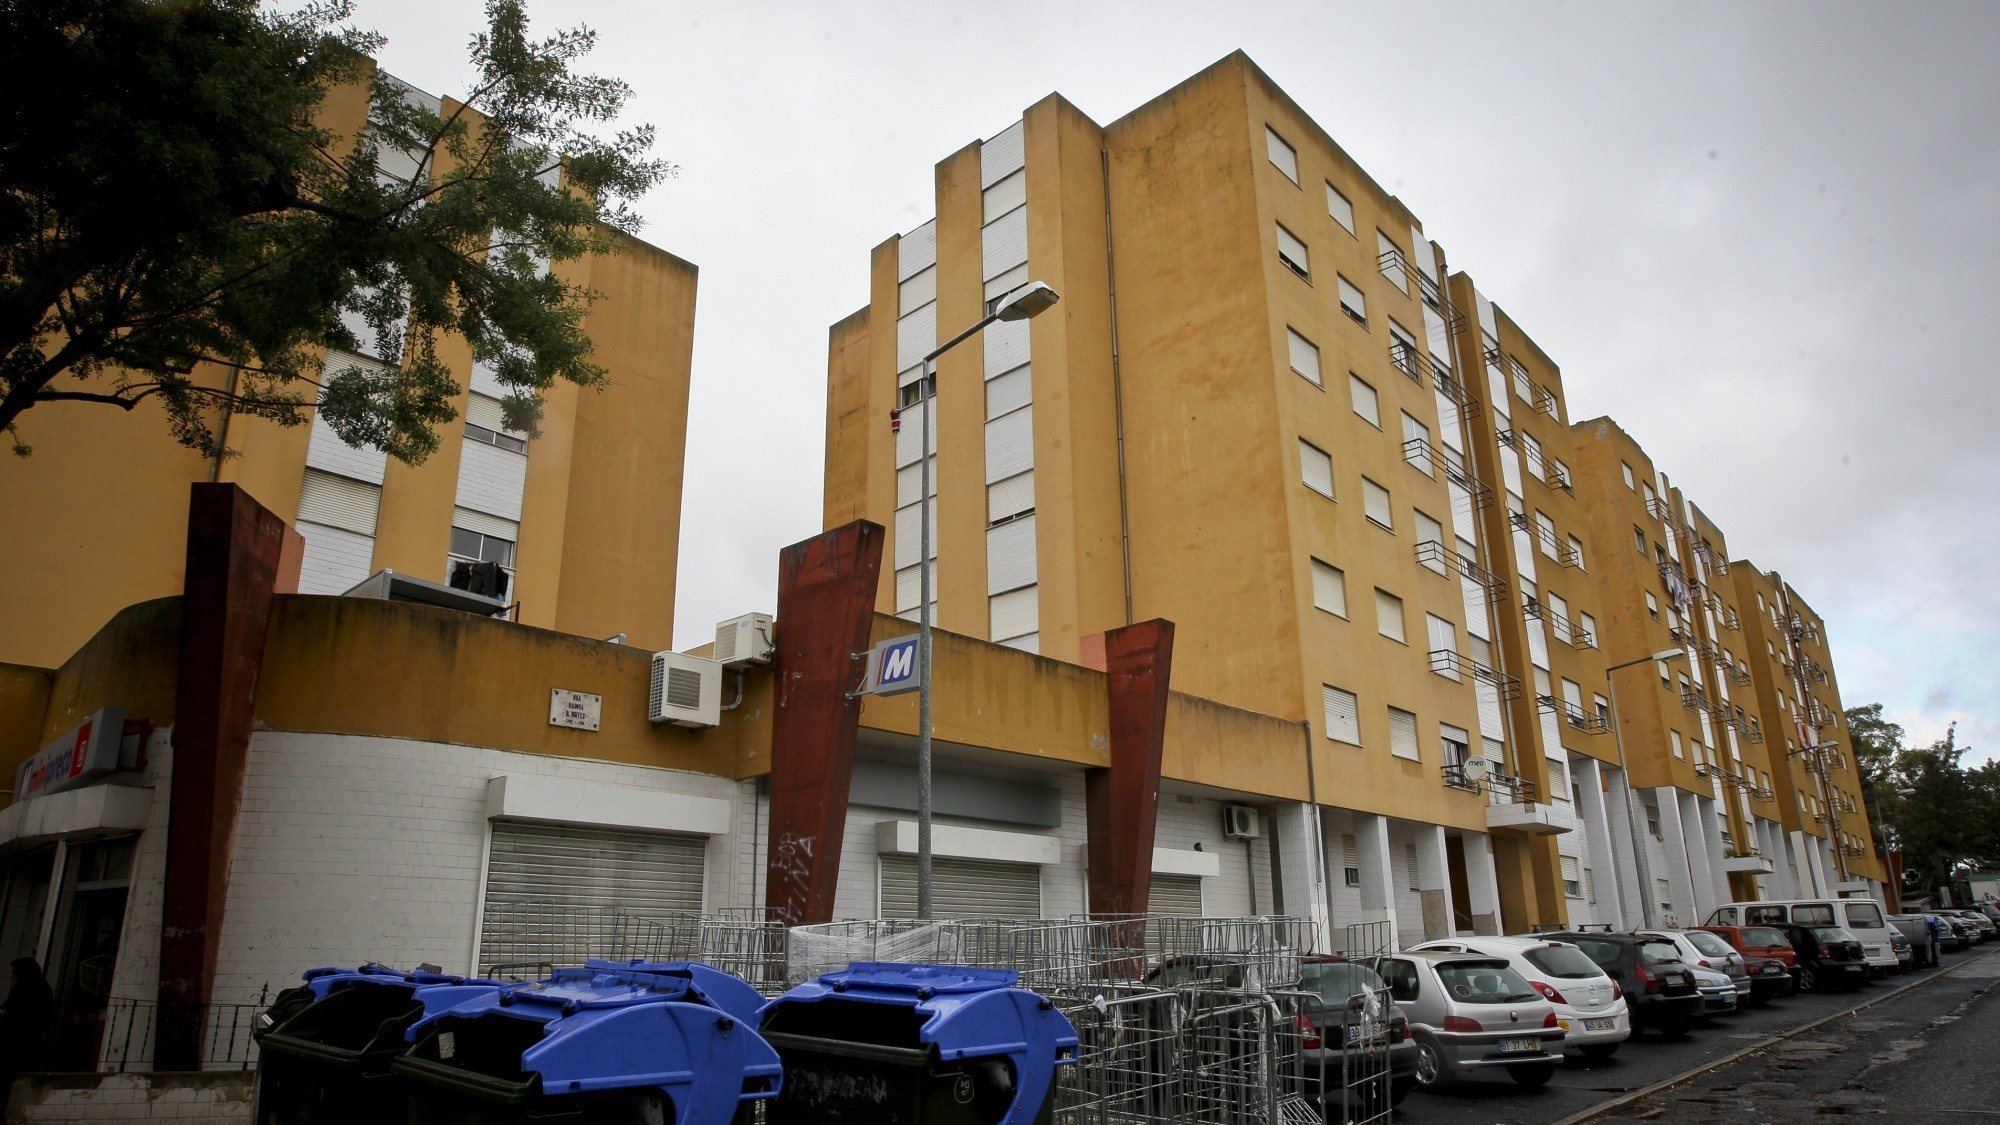 Bairro da Boavista, em Lisboa, é um dos vários bairros geridos pela empresa municipal Gebalis